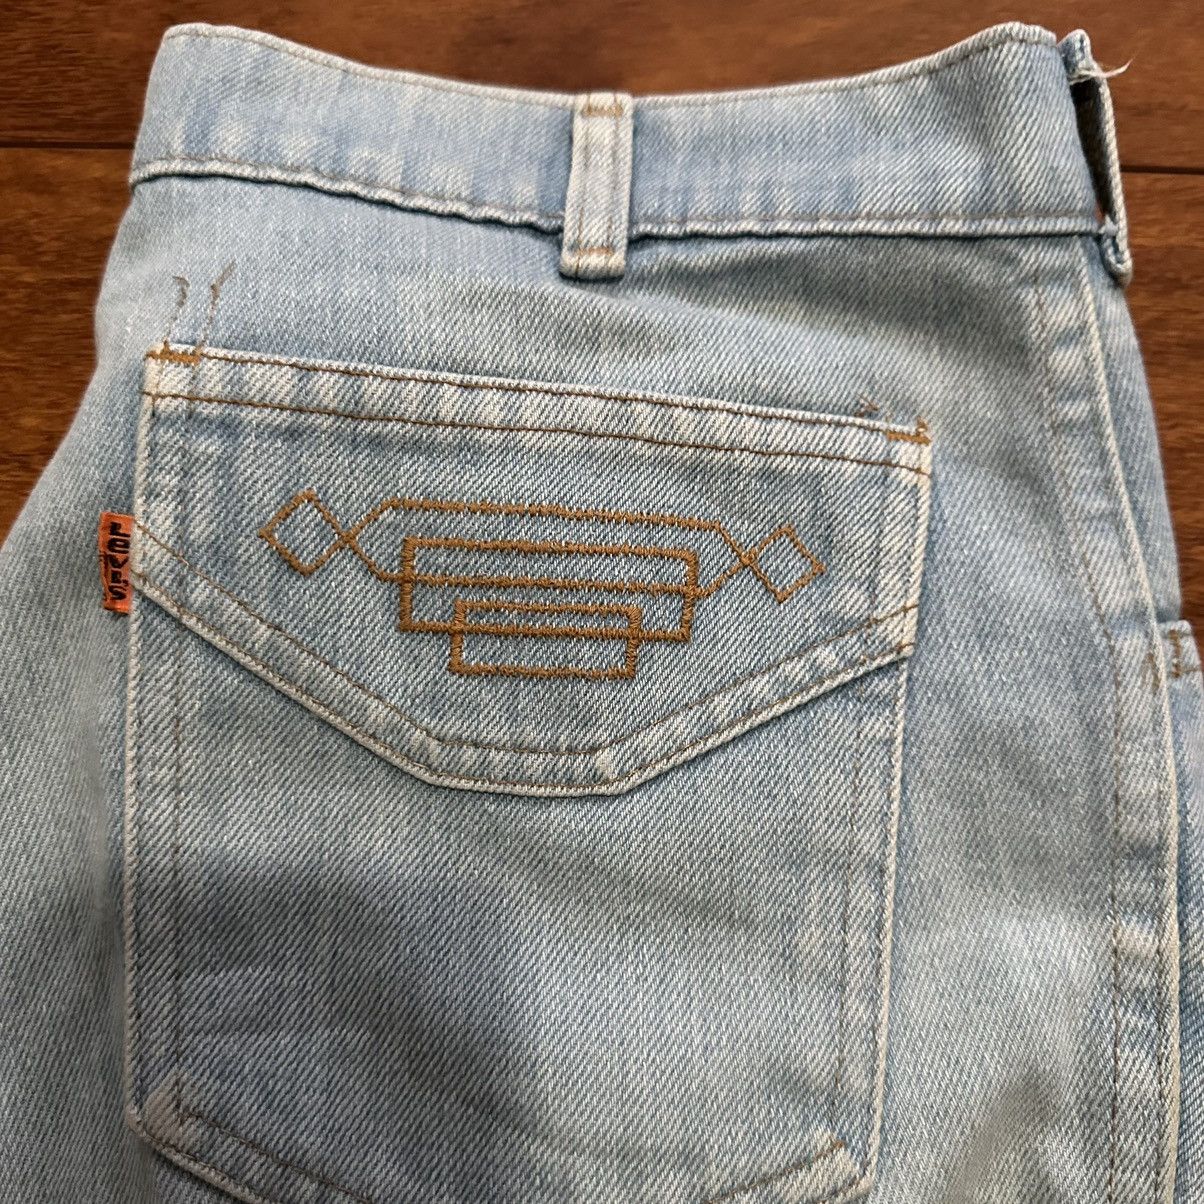 Vintage Vintage 70s Ladies Flare Orange Tab Flare Denim Jeans Size 32" / US 10 / IT 46 - 5 Thumbnail